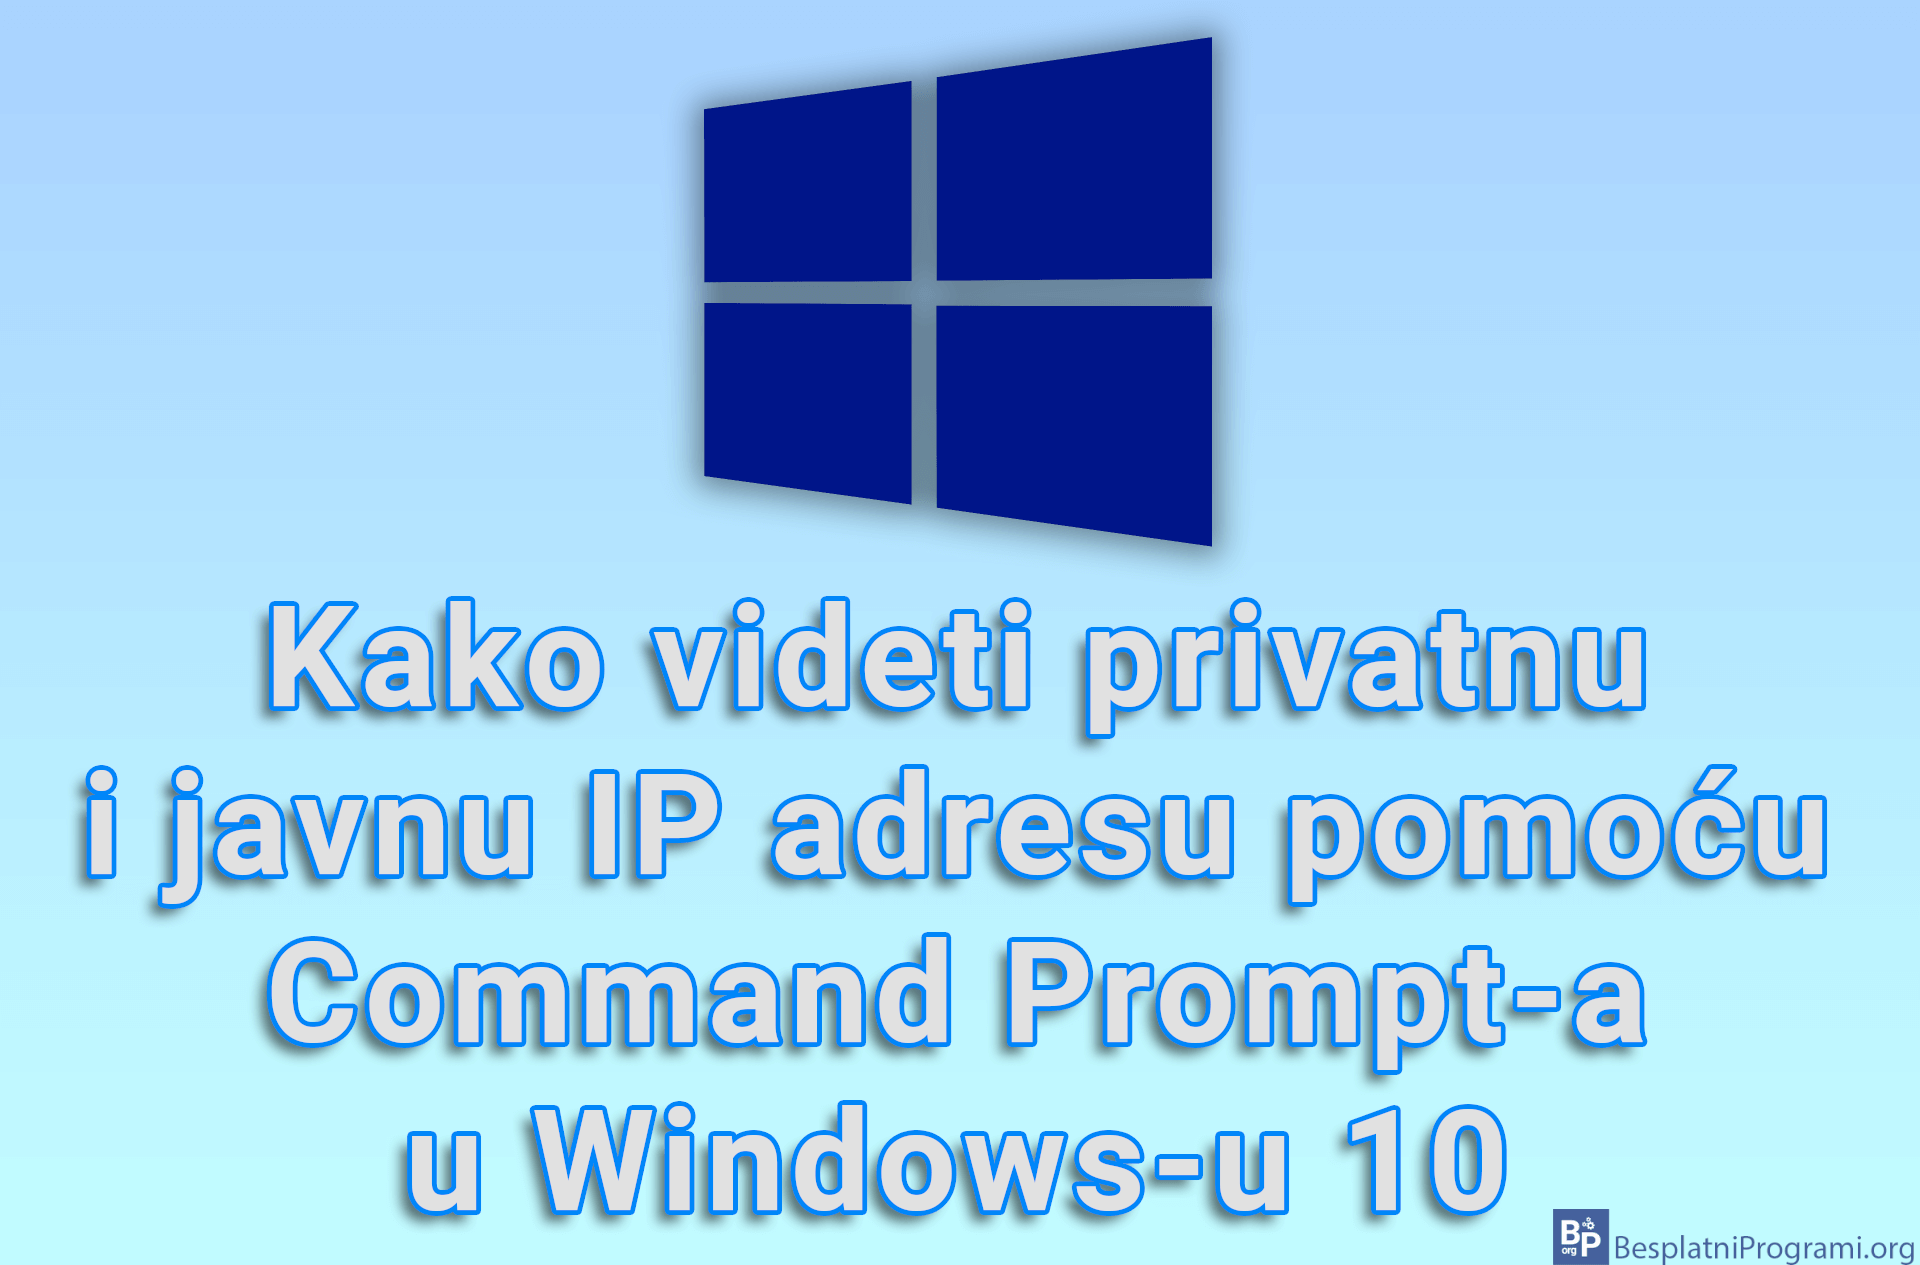 Kako videti privatnu i javnu IP adresu pomoću Command Prompt-a u Windows-u 10